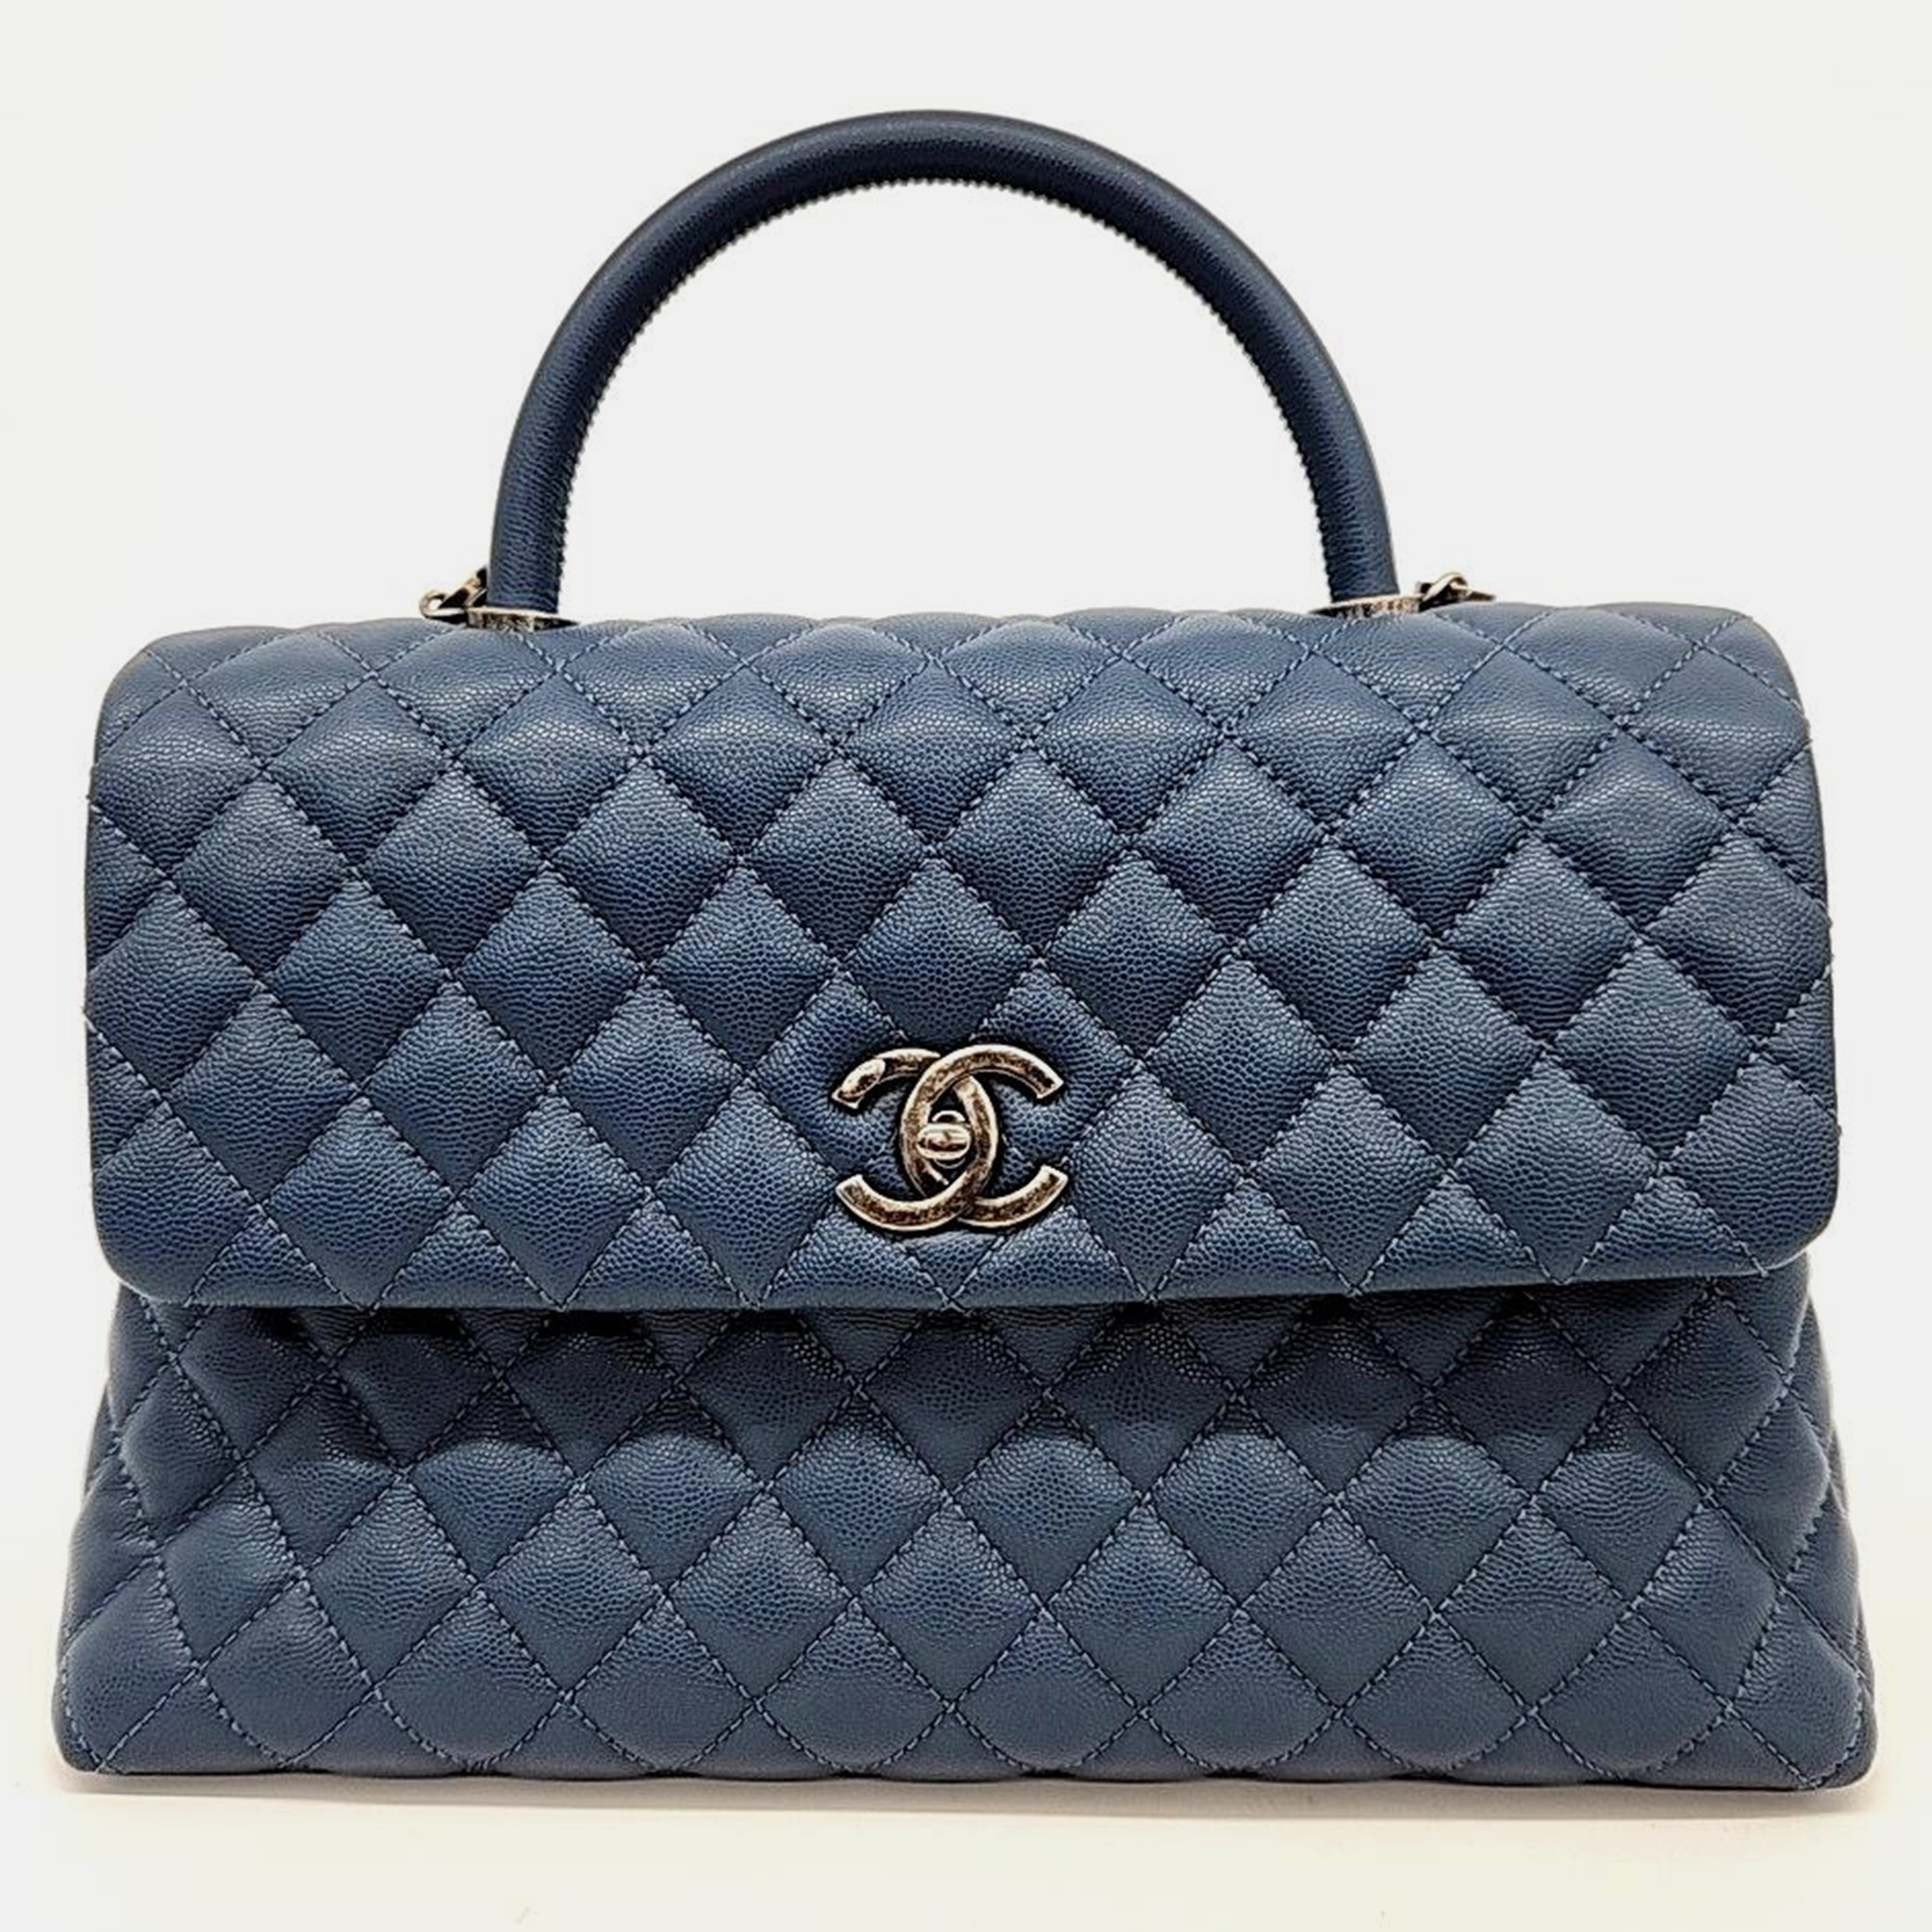 Chanel caviar coco handle 31 handbag